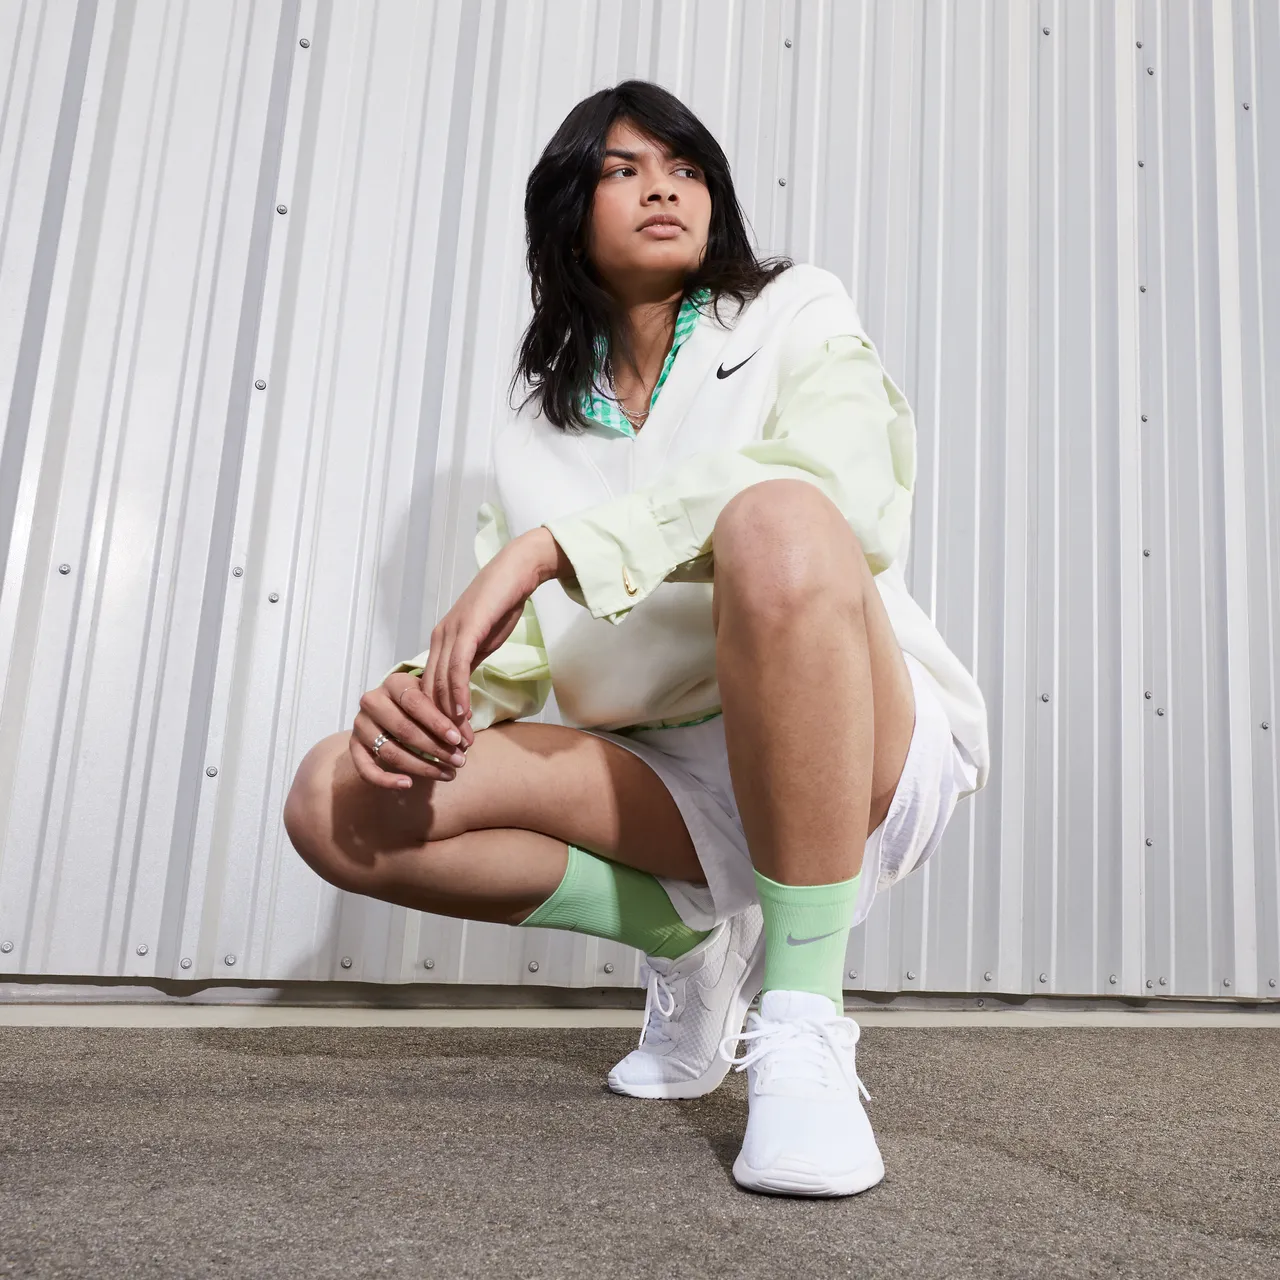 Nike Tanjun EasyOn Women's Shoes - White